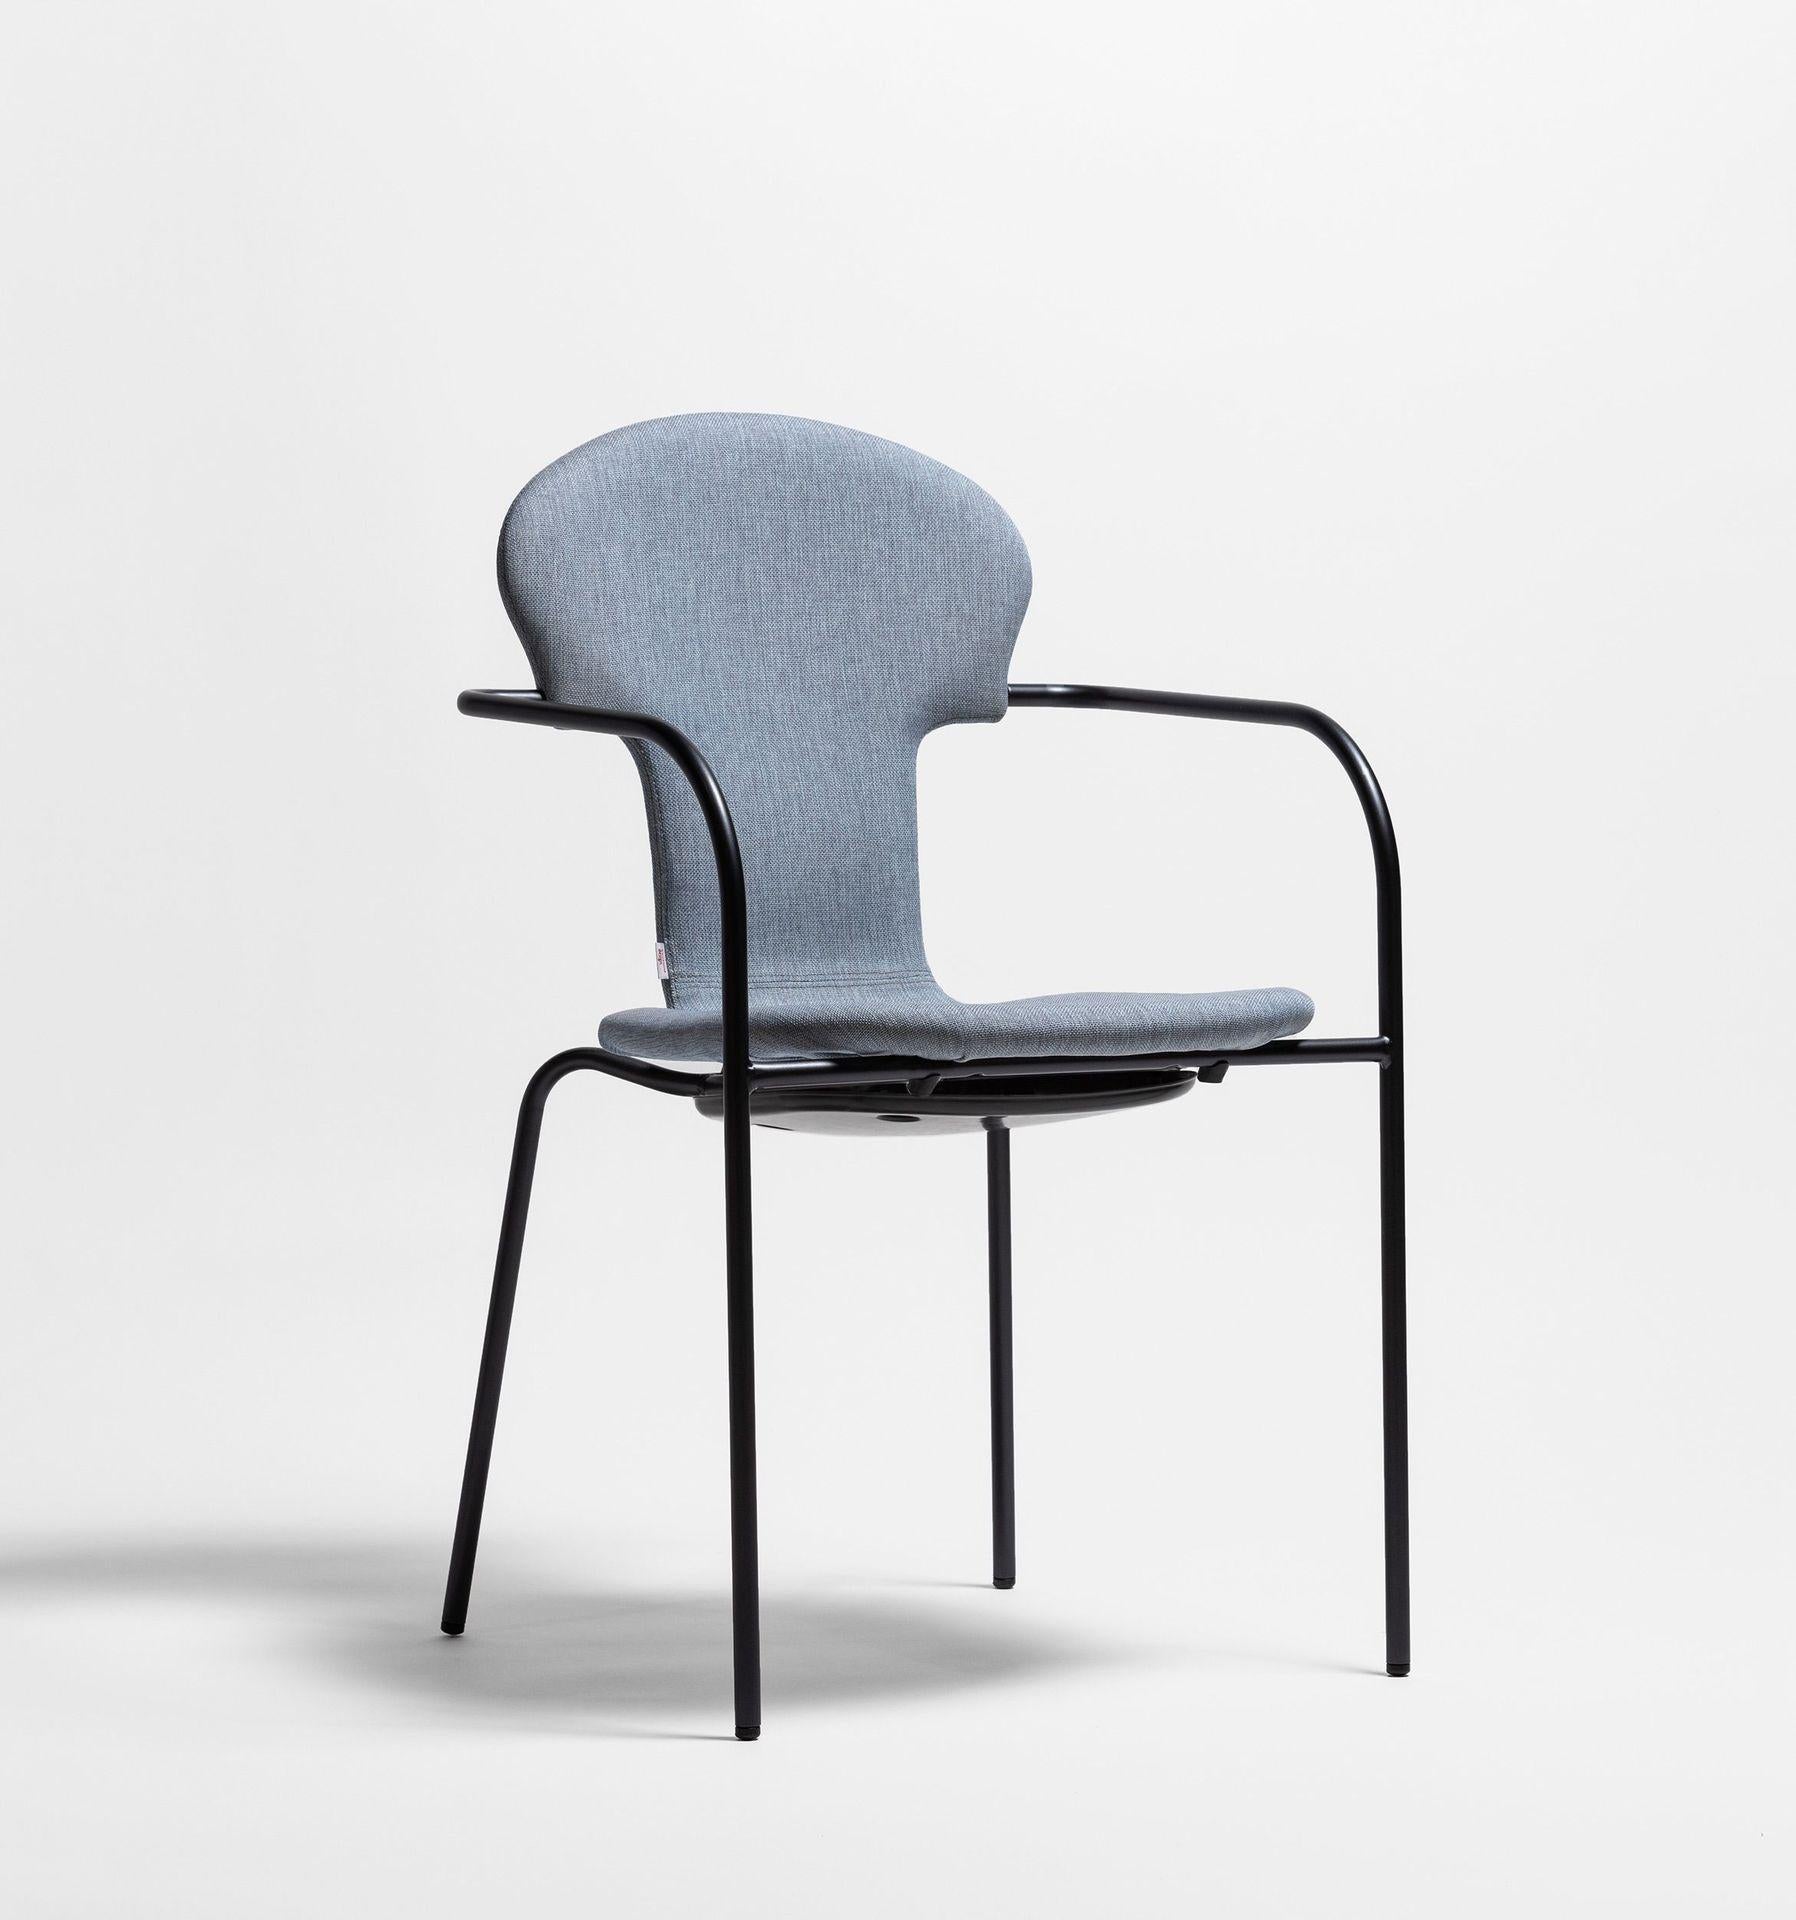 Minivarius blauer stuhl by Oscar Tusquets
Abmessungen: T 53 x B 52 x H 82 cm 
MATERIALIEN: Struktur aus anodisch schwarz lackiertem Stahlrohr. Ein einteiliger Sitz aus gasinjiziertem Polypropylen in Schwarz oder Weiß. Auch in einer gepolsterten